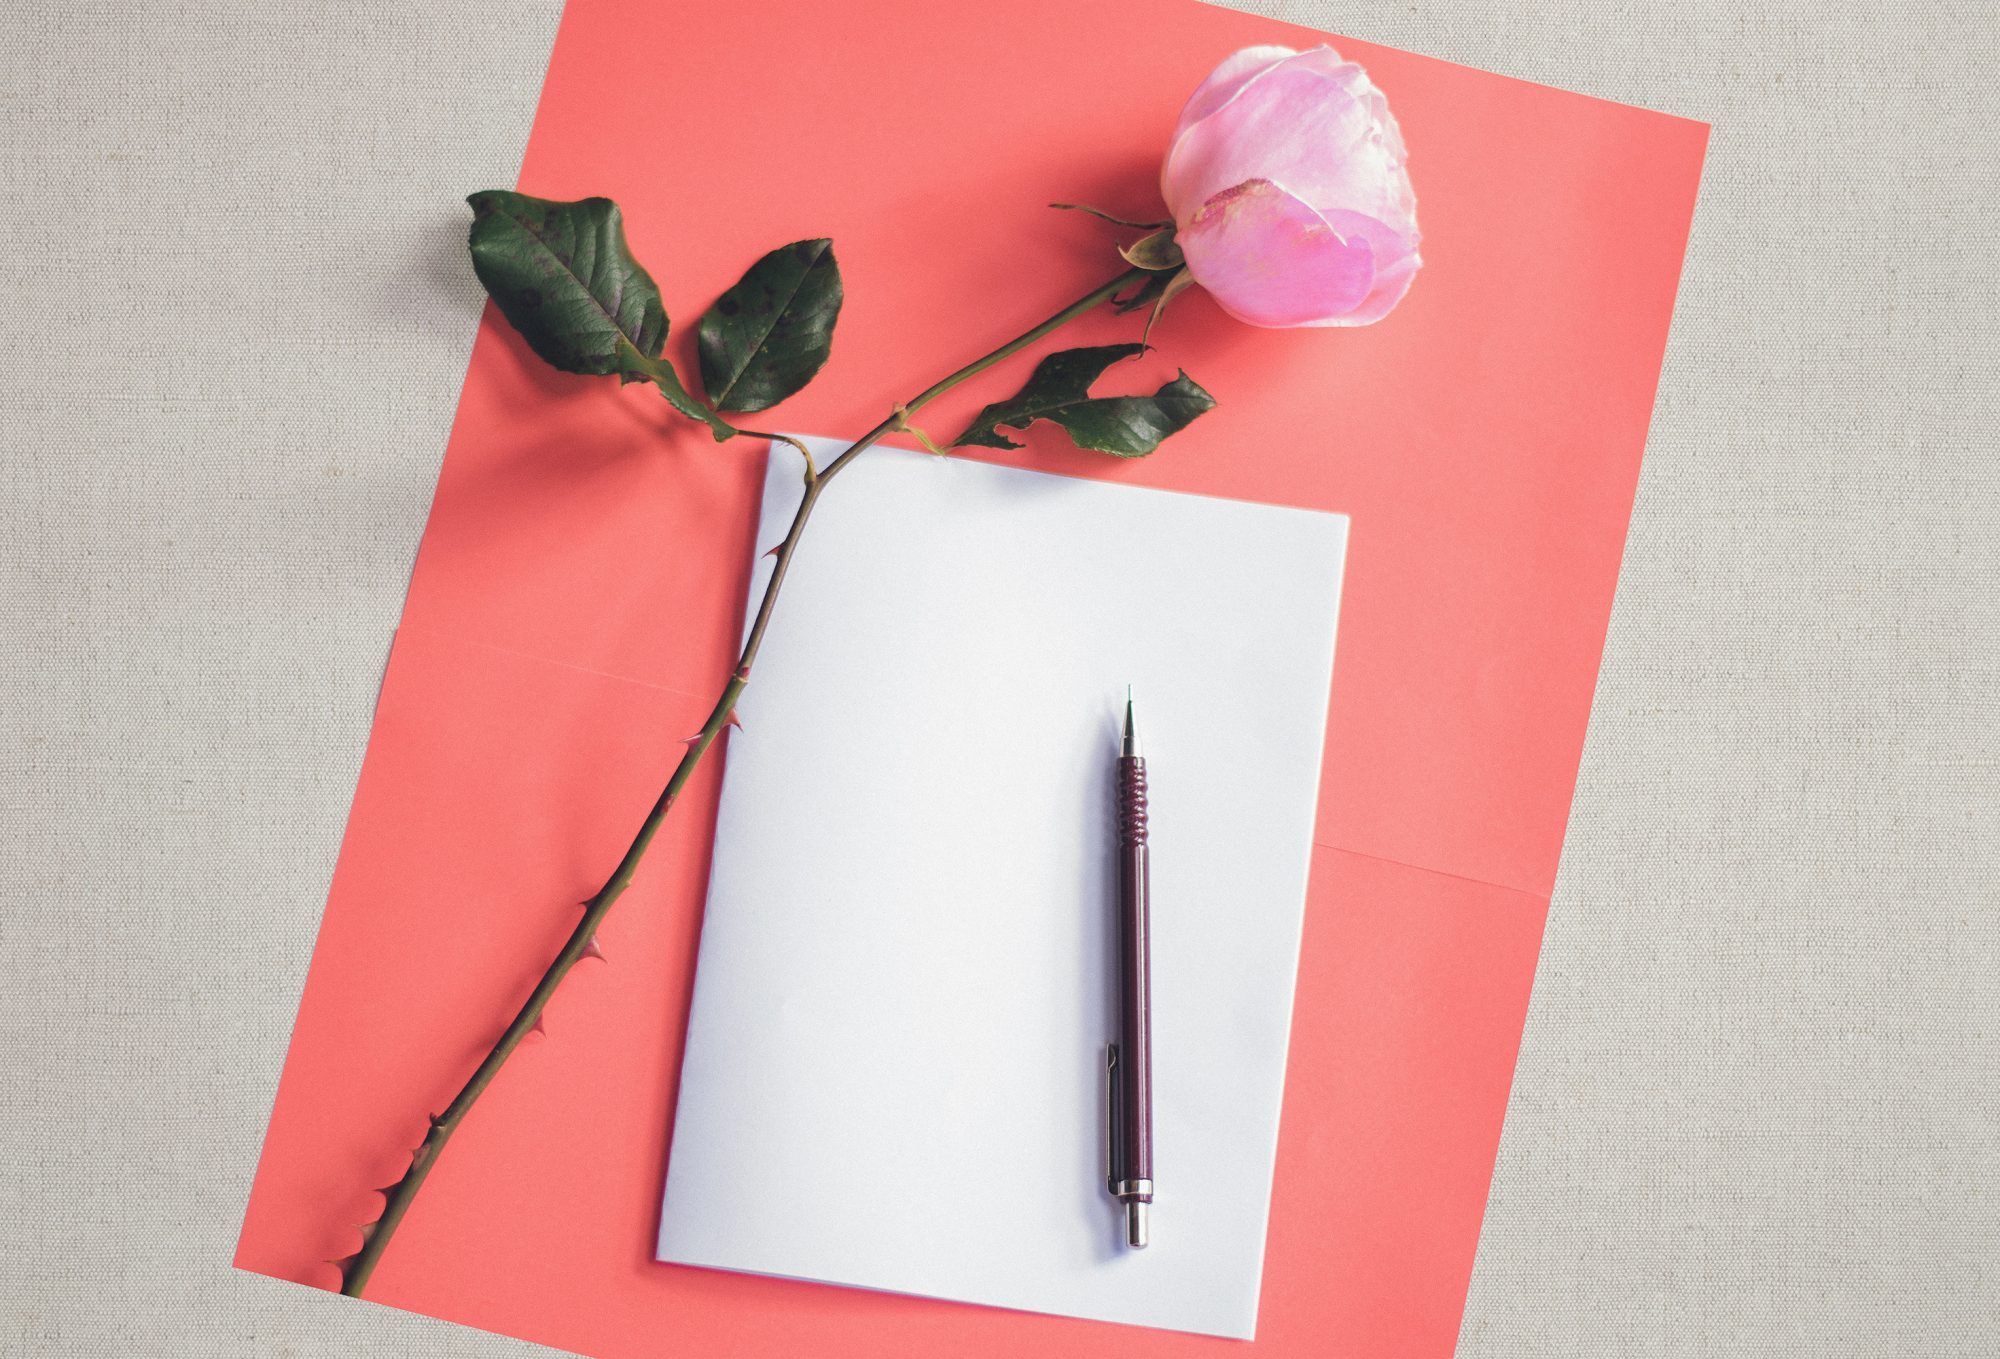 بر اساس تحقیقات، 5 مزیت تایید کننده زندگی نامه نوشتن با دست